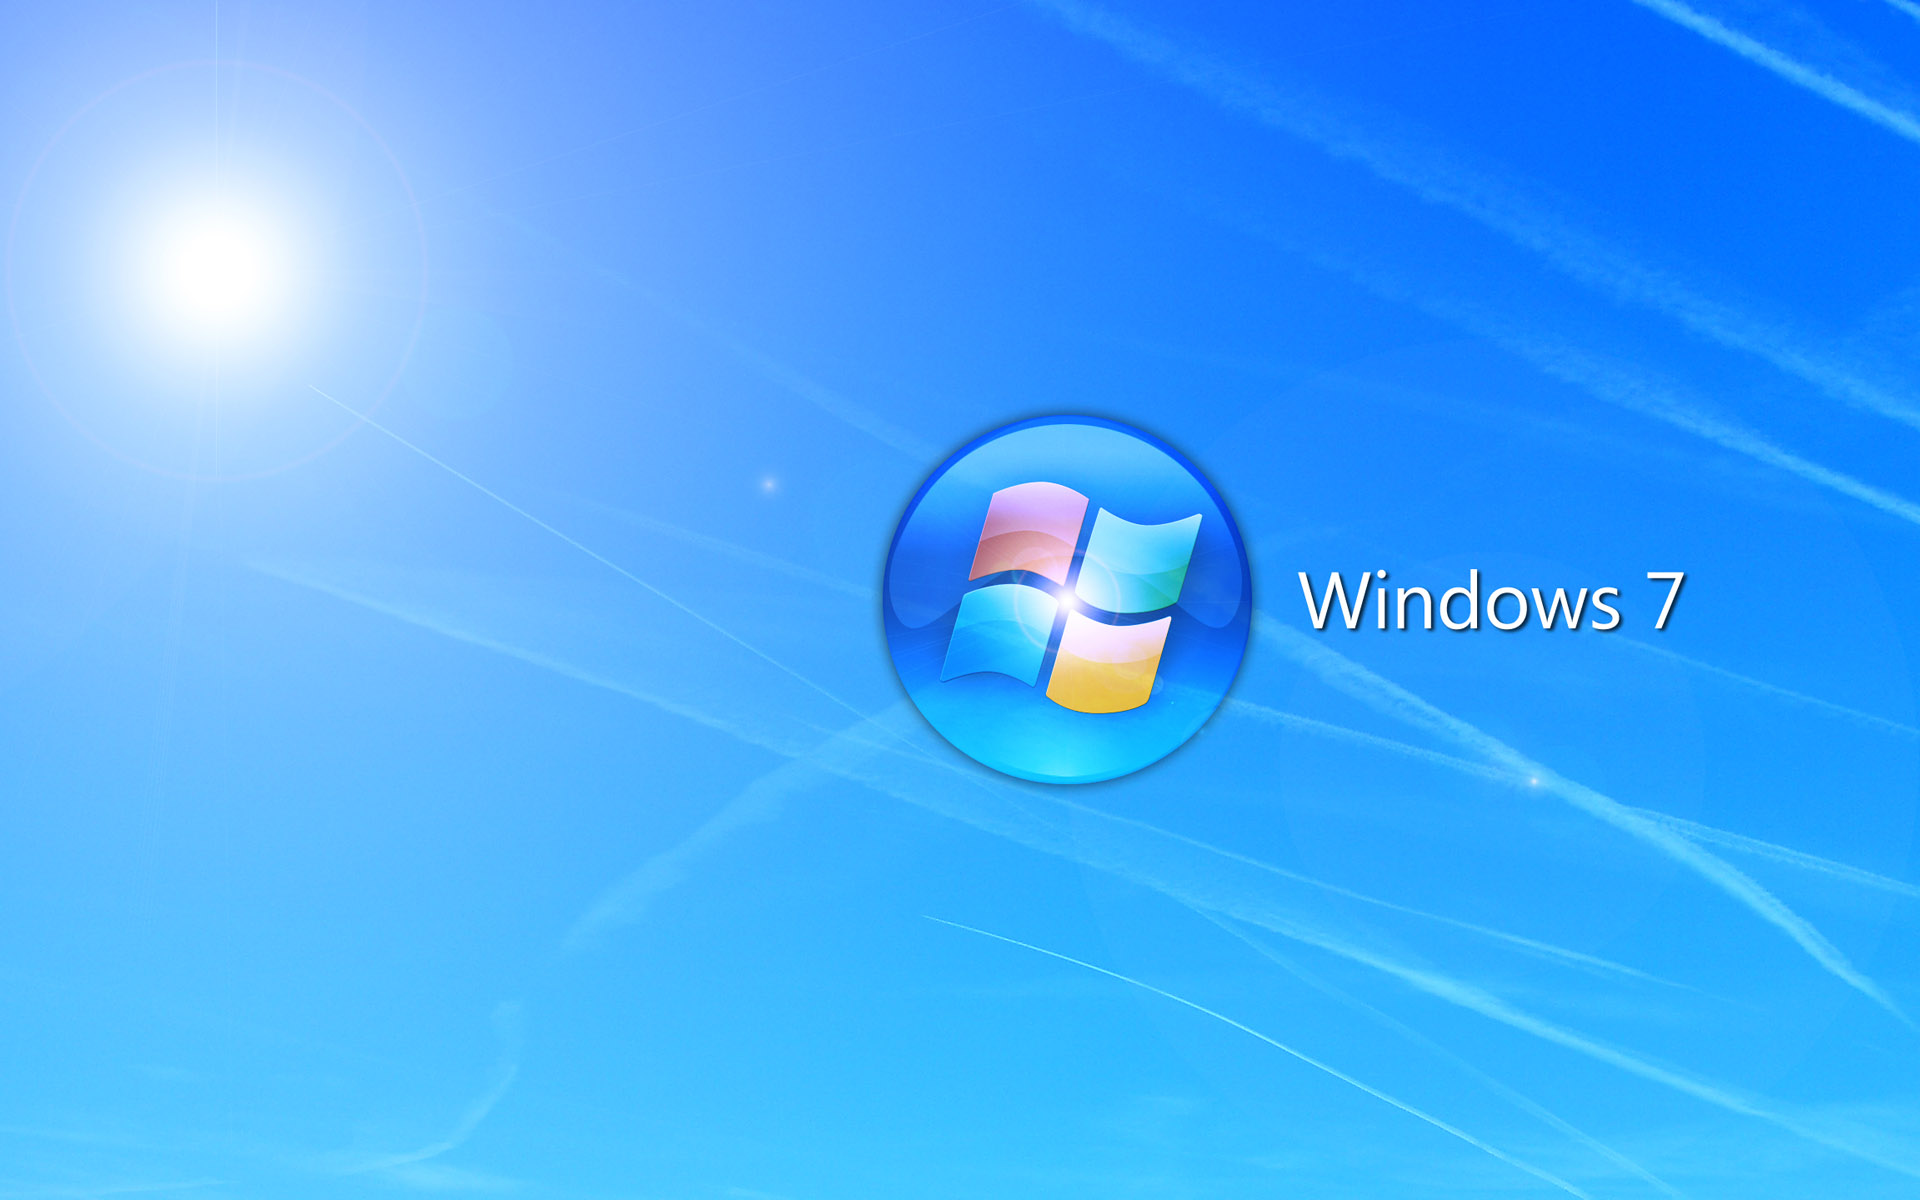 Windows 7 cũng cung cấp một loạt các hình nền PC độ phân giải cao để giúp bạn trang trí màn hình của mình. Chỉ cần tải về và sử dụng thôi, không cần phải trả bất kỳ chi phí nào. Hãy để hình nền PC HD của Windows 7 làm cho màn hình của bạn trở nên đẹp mắt và thu hút hơn bao giờ hết!